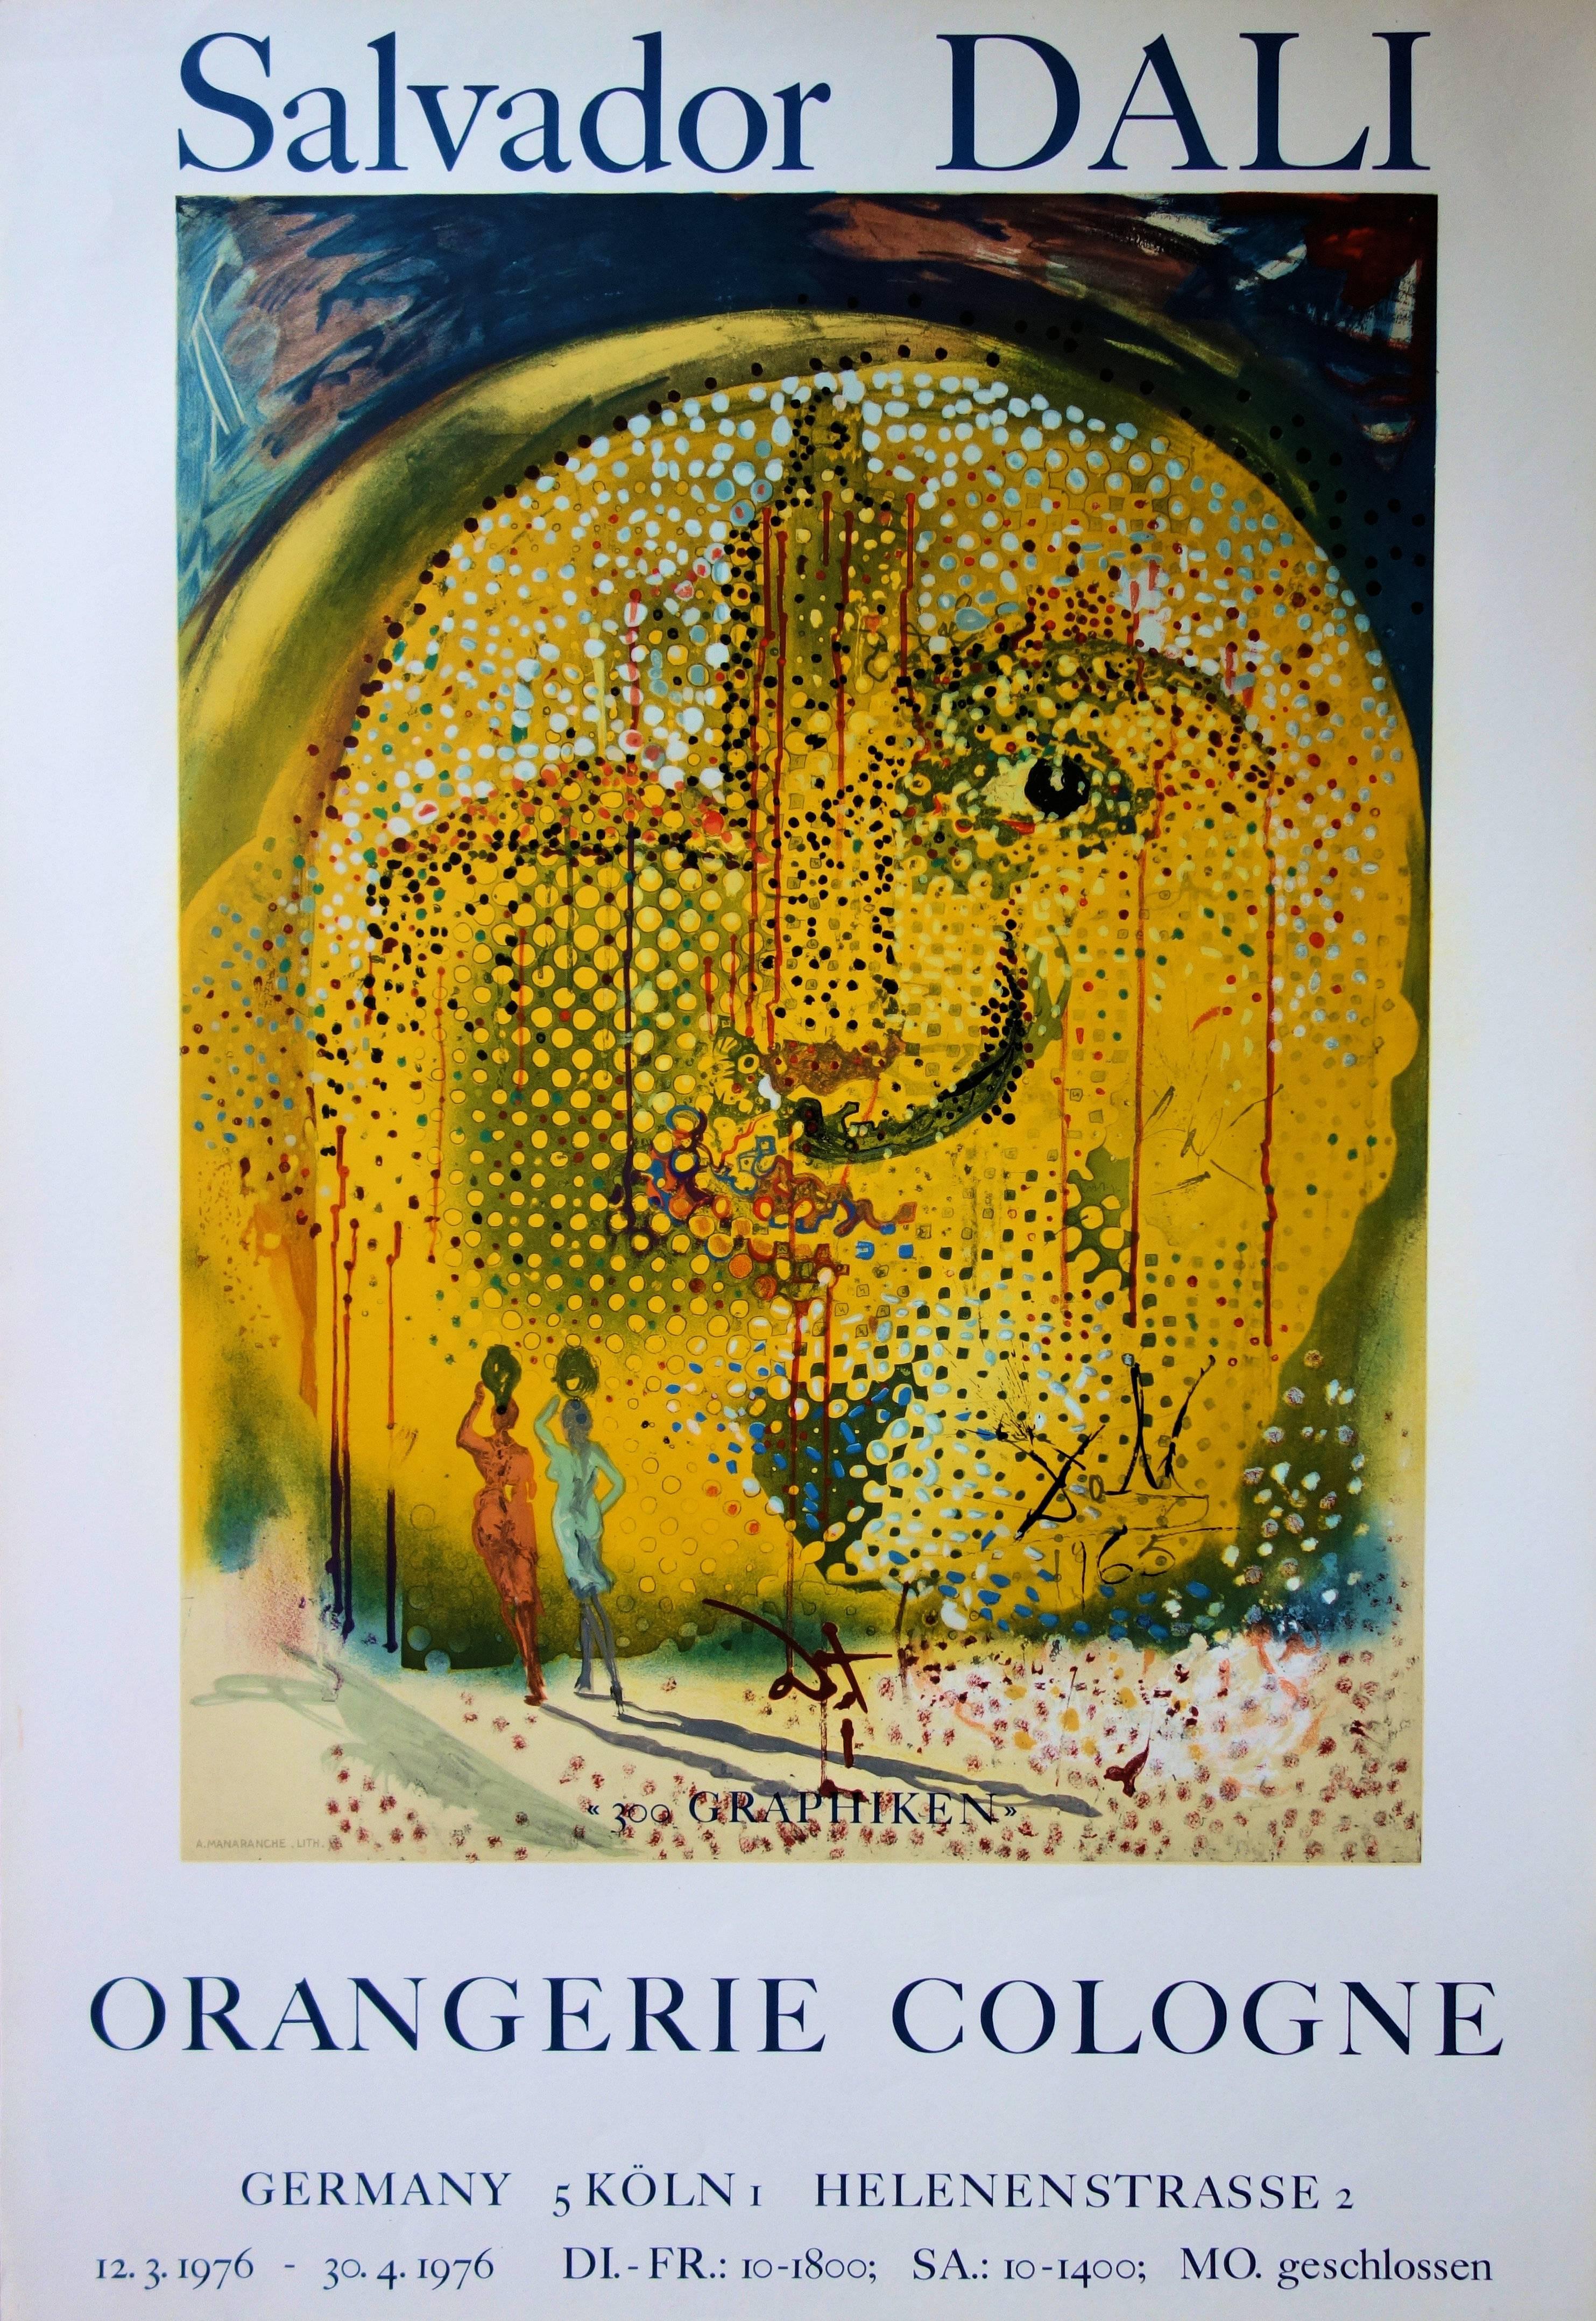 Sol y Dali - Seltene Vintage-Lithographie Poster - Mourlot 1967 (Gehaltsnummer 67-1)